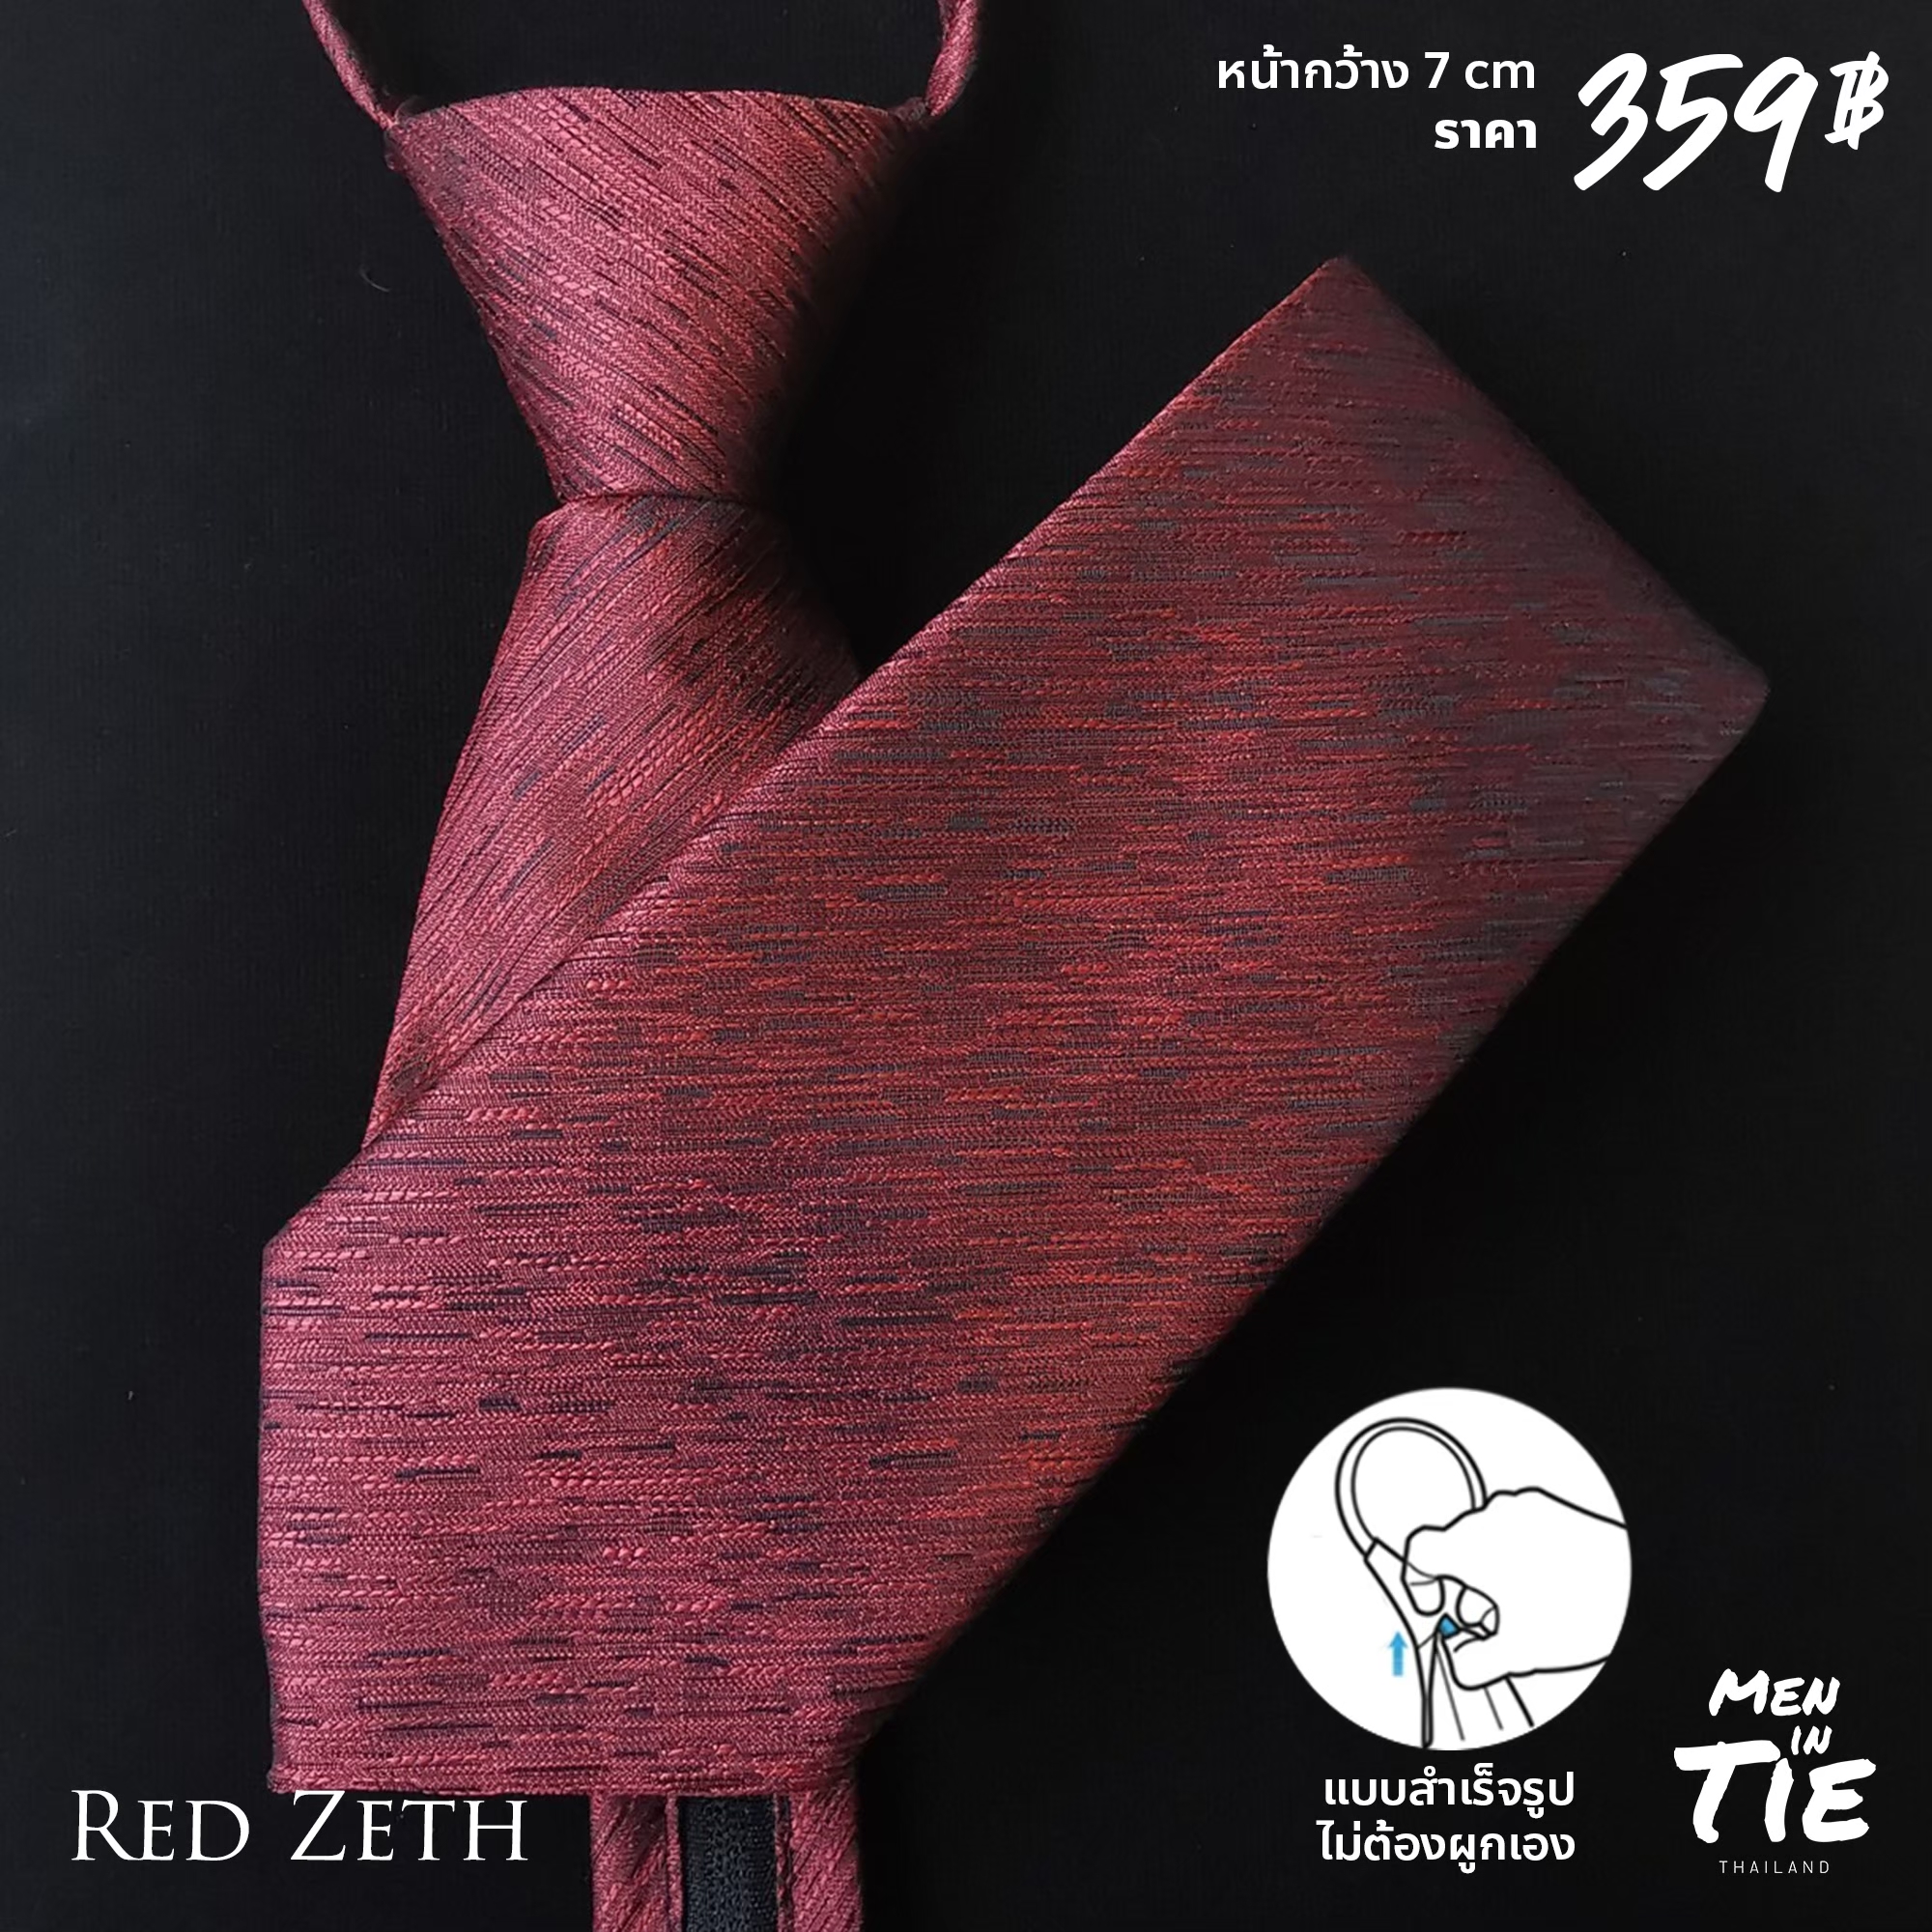 Men in Tie เนคไทแบบสำเร็จรูปแบบสุภาพใส่ทำงาน หน้ากว้าง 7cm  ยาว 18นิ้ว